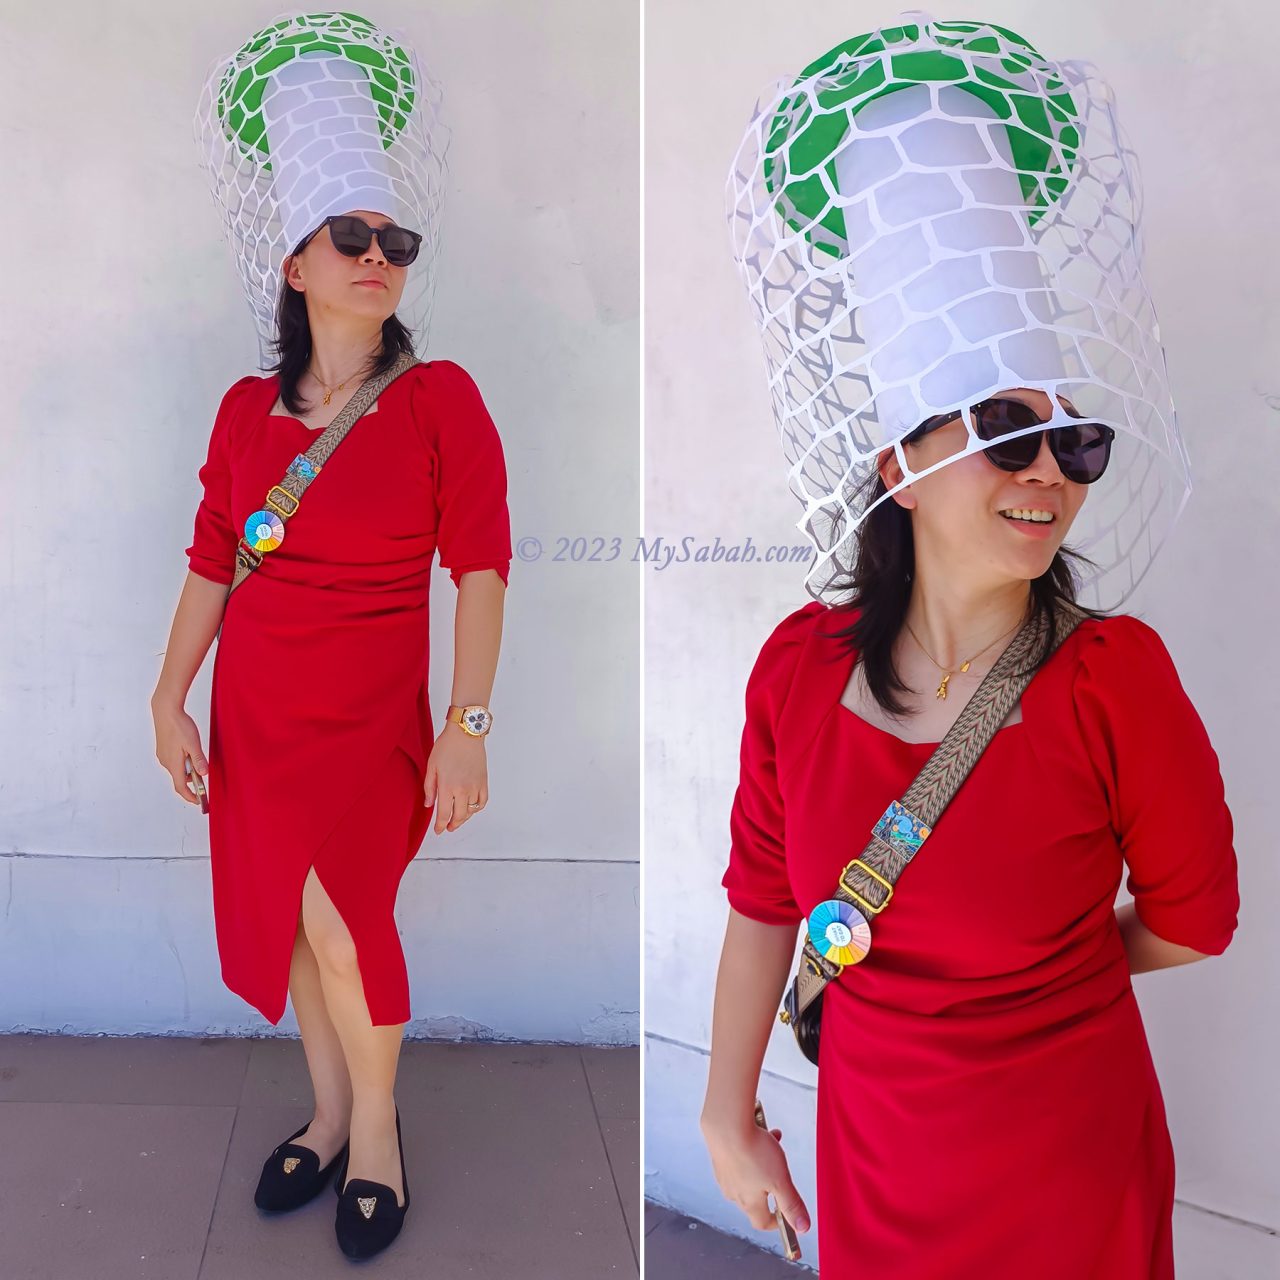 Fashion inspired by Bridal Veil mushroom